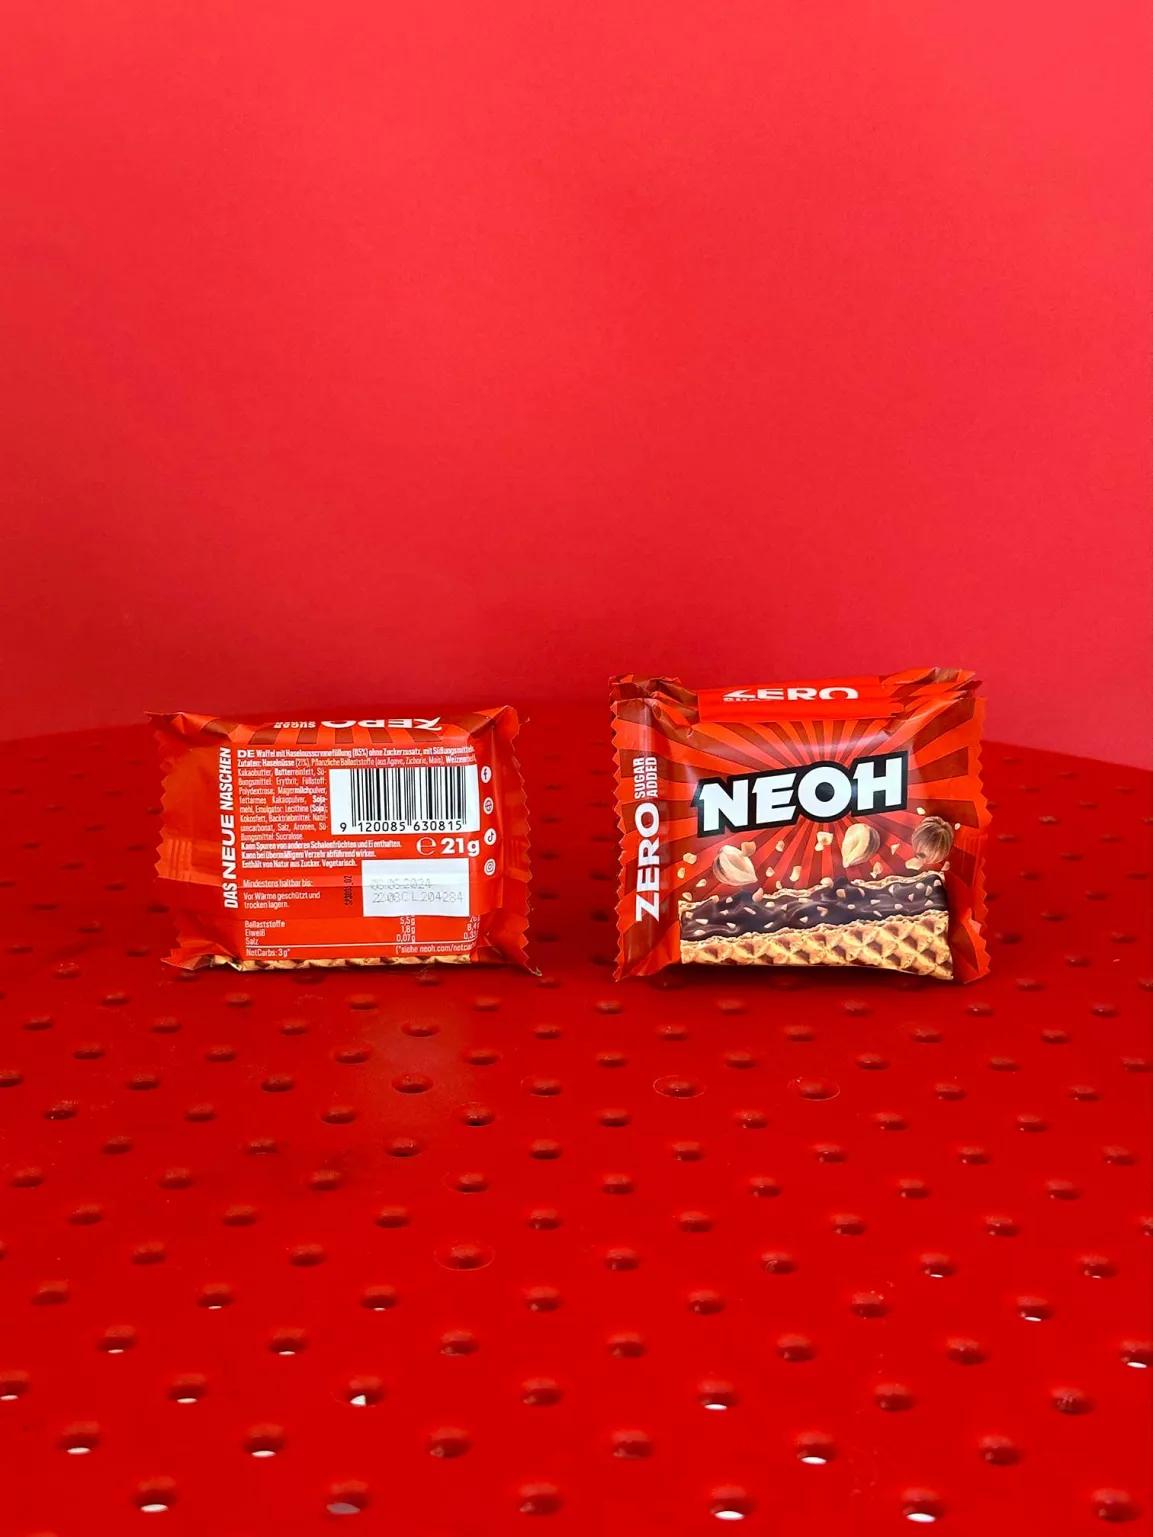 Foto eines NEOH Produktes